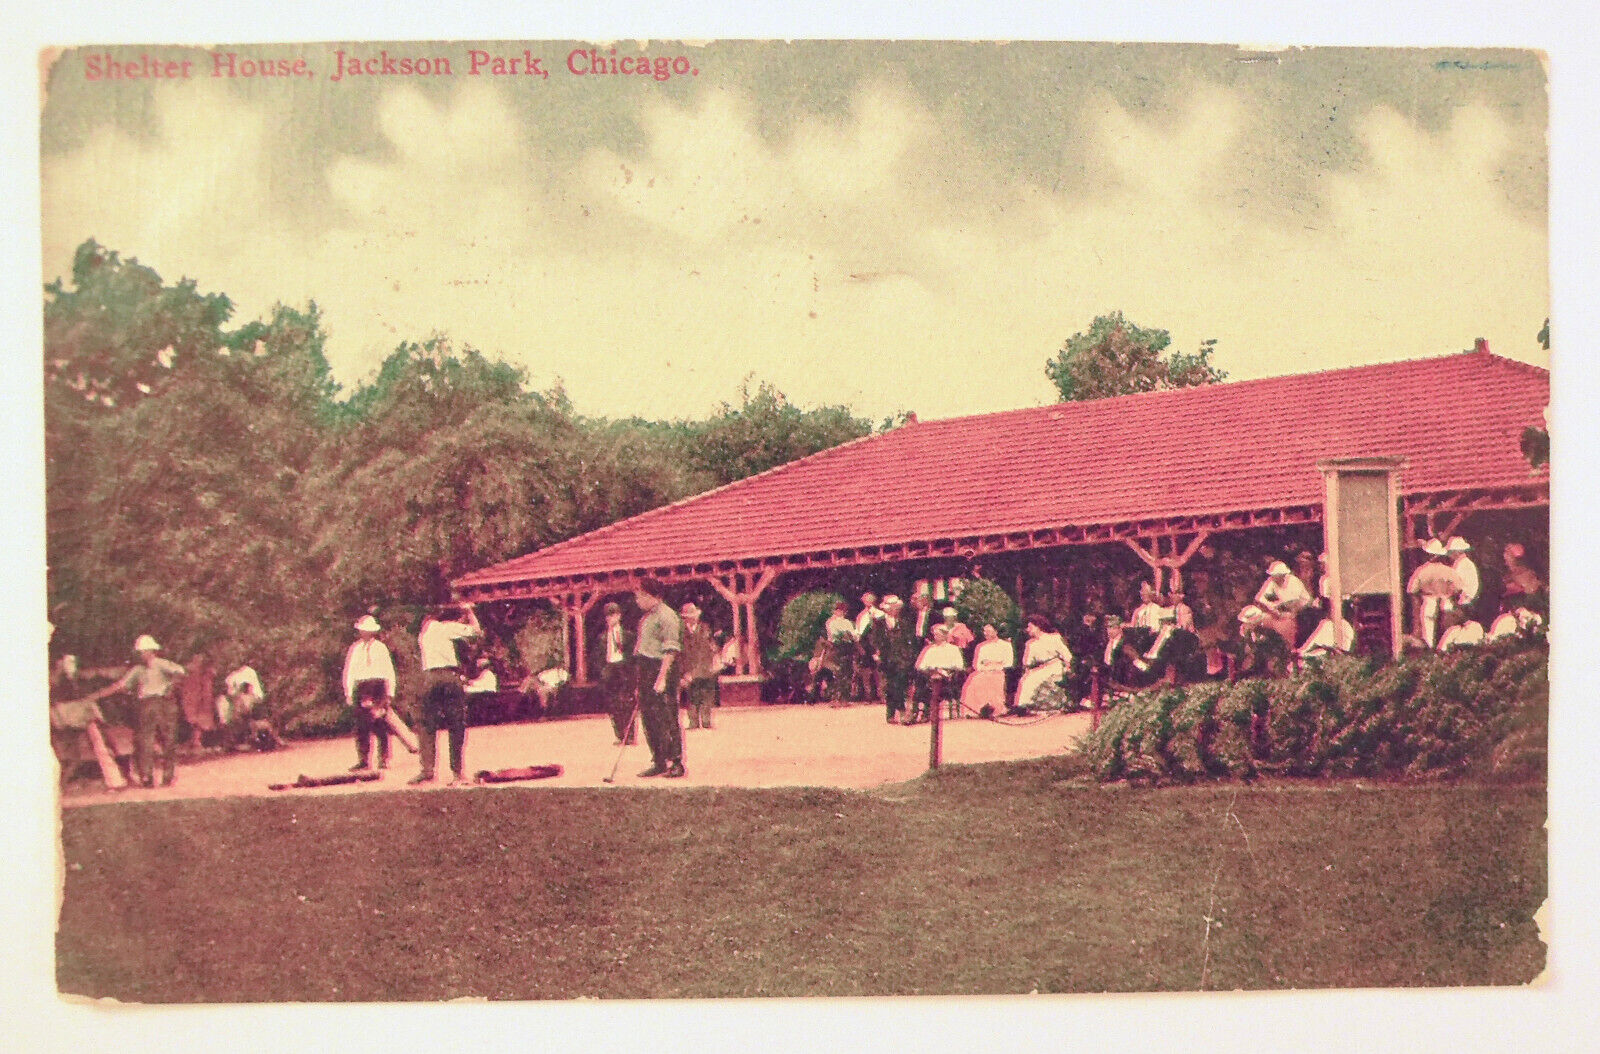 Jackson Park Chicago IL Shelter House Postcard Vintage Ben Franklin Stamp 1910s 